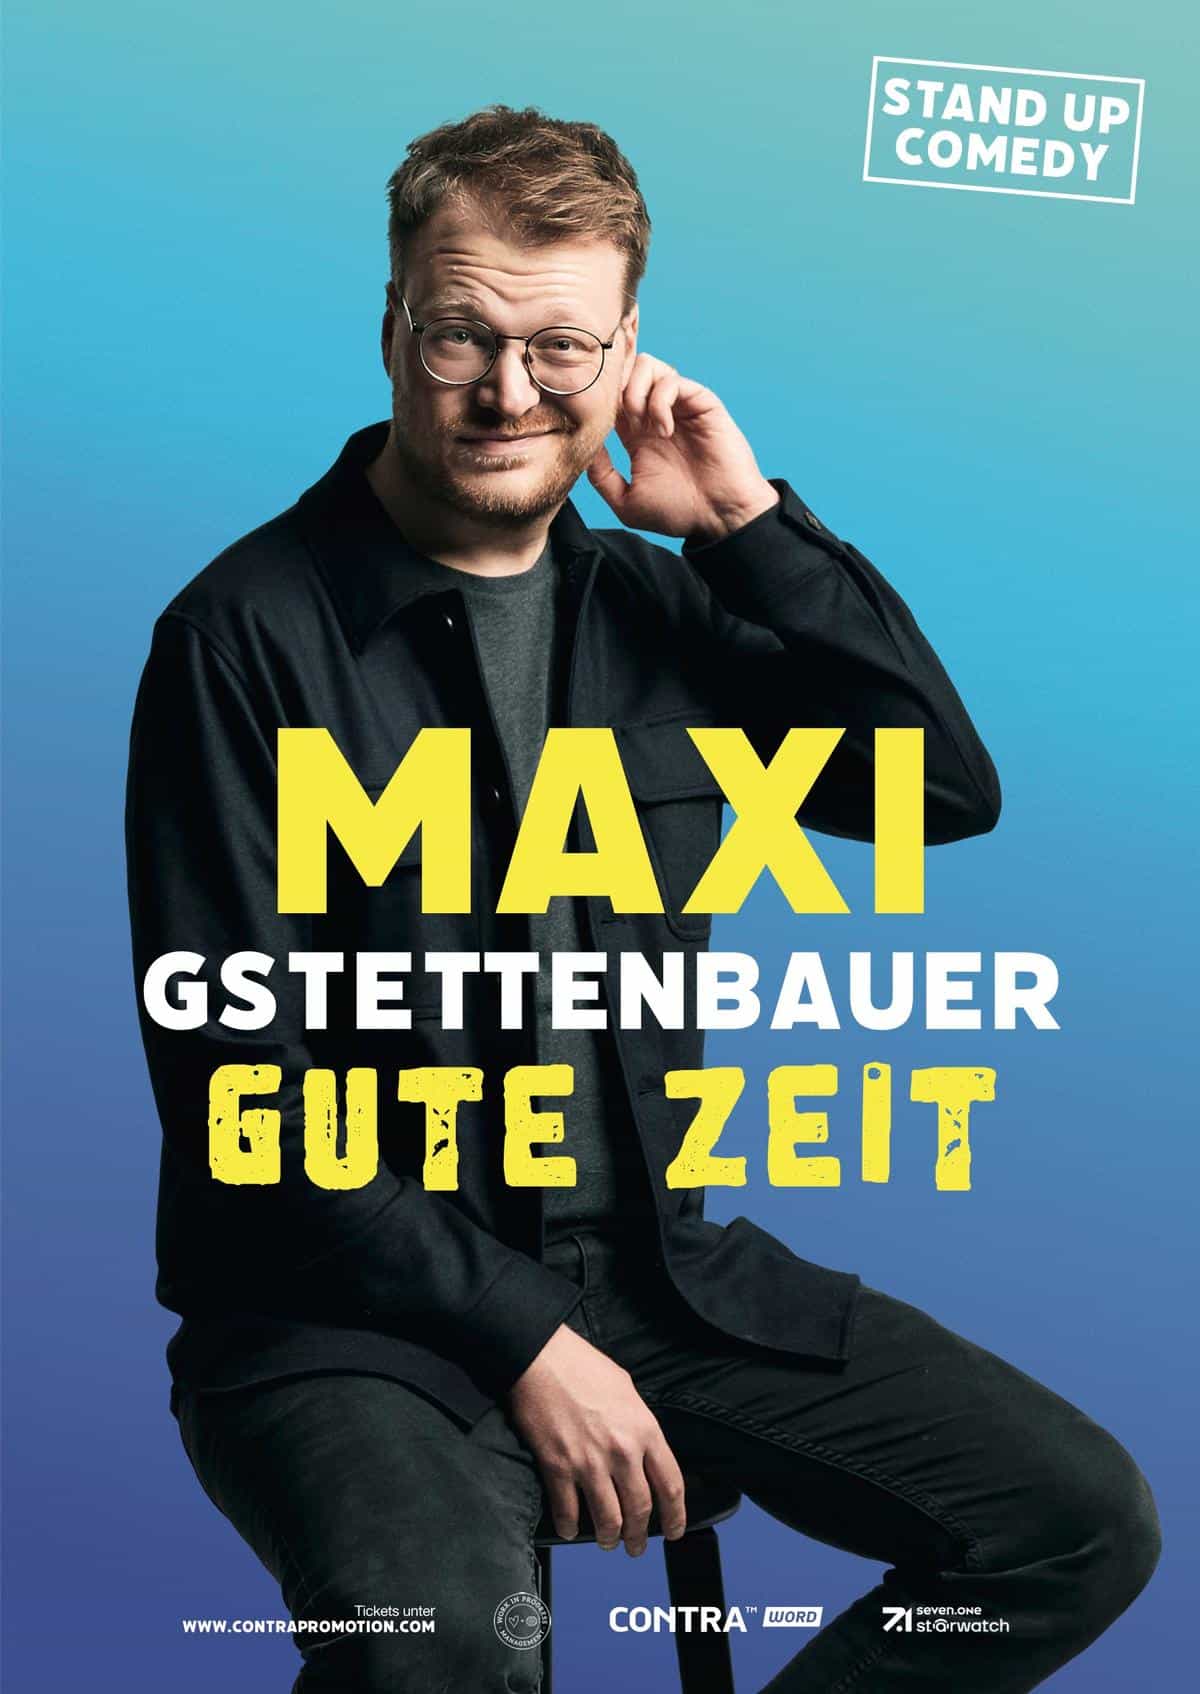 MAxi Gstettenbauer (© Marvin Ruppert)